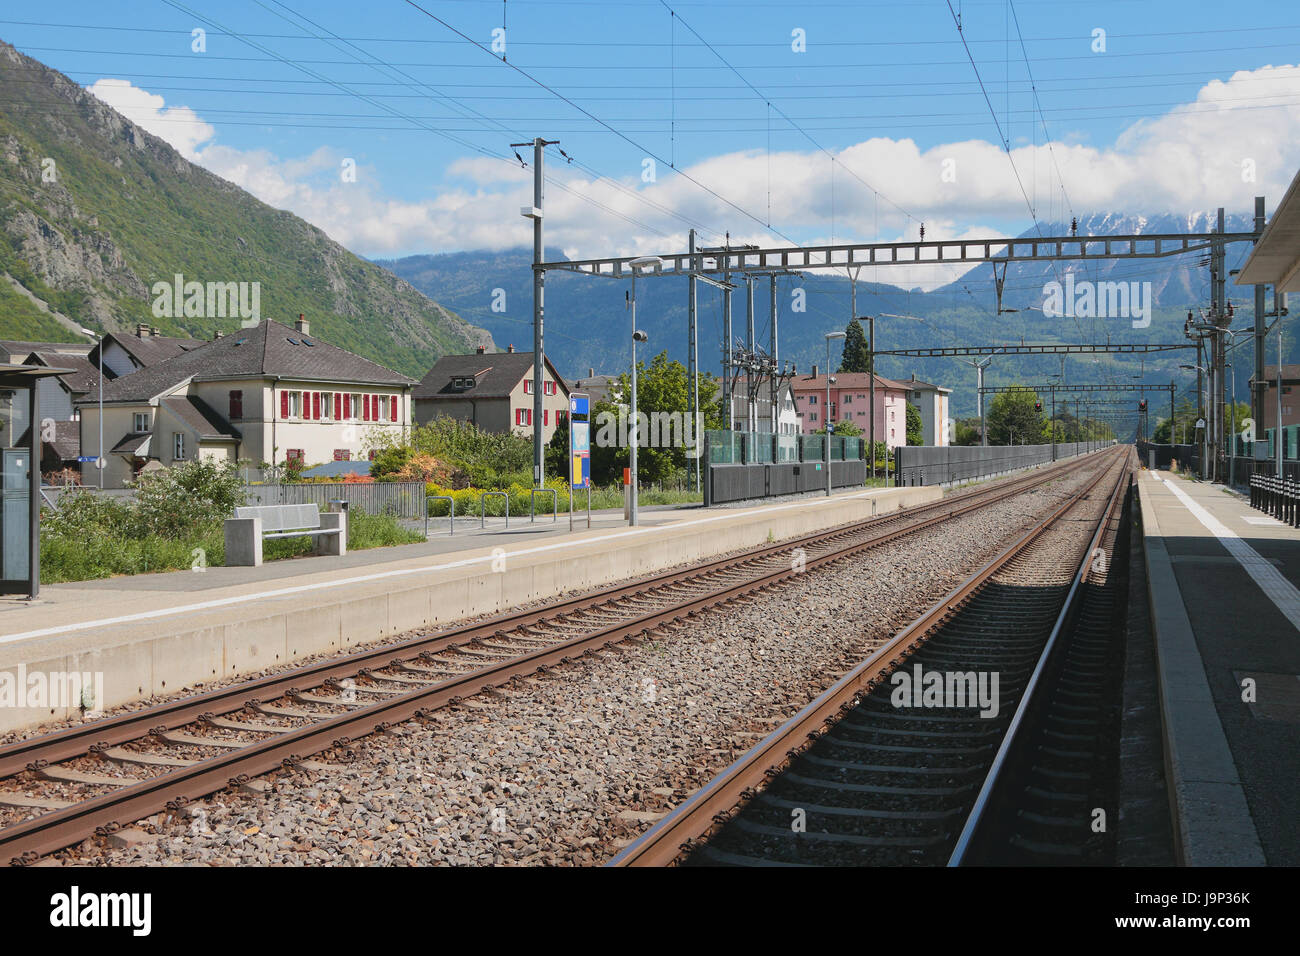 Electrified railway tracks. Vernayaz, Martigny, Switzerland Stock Photo